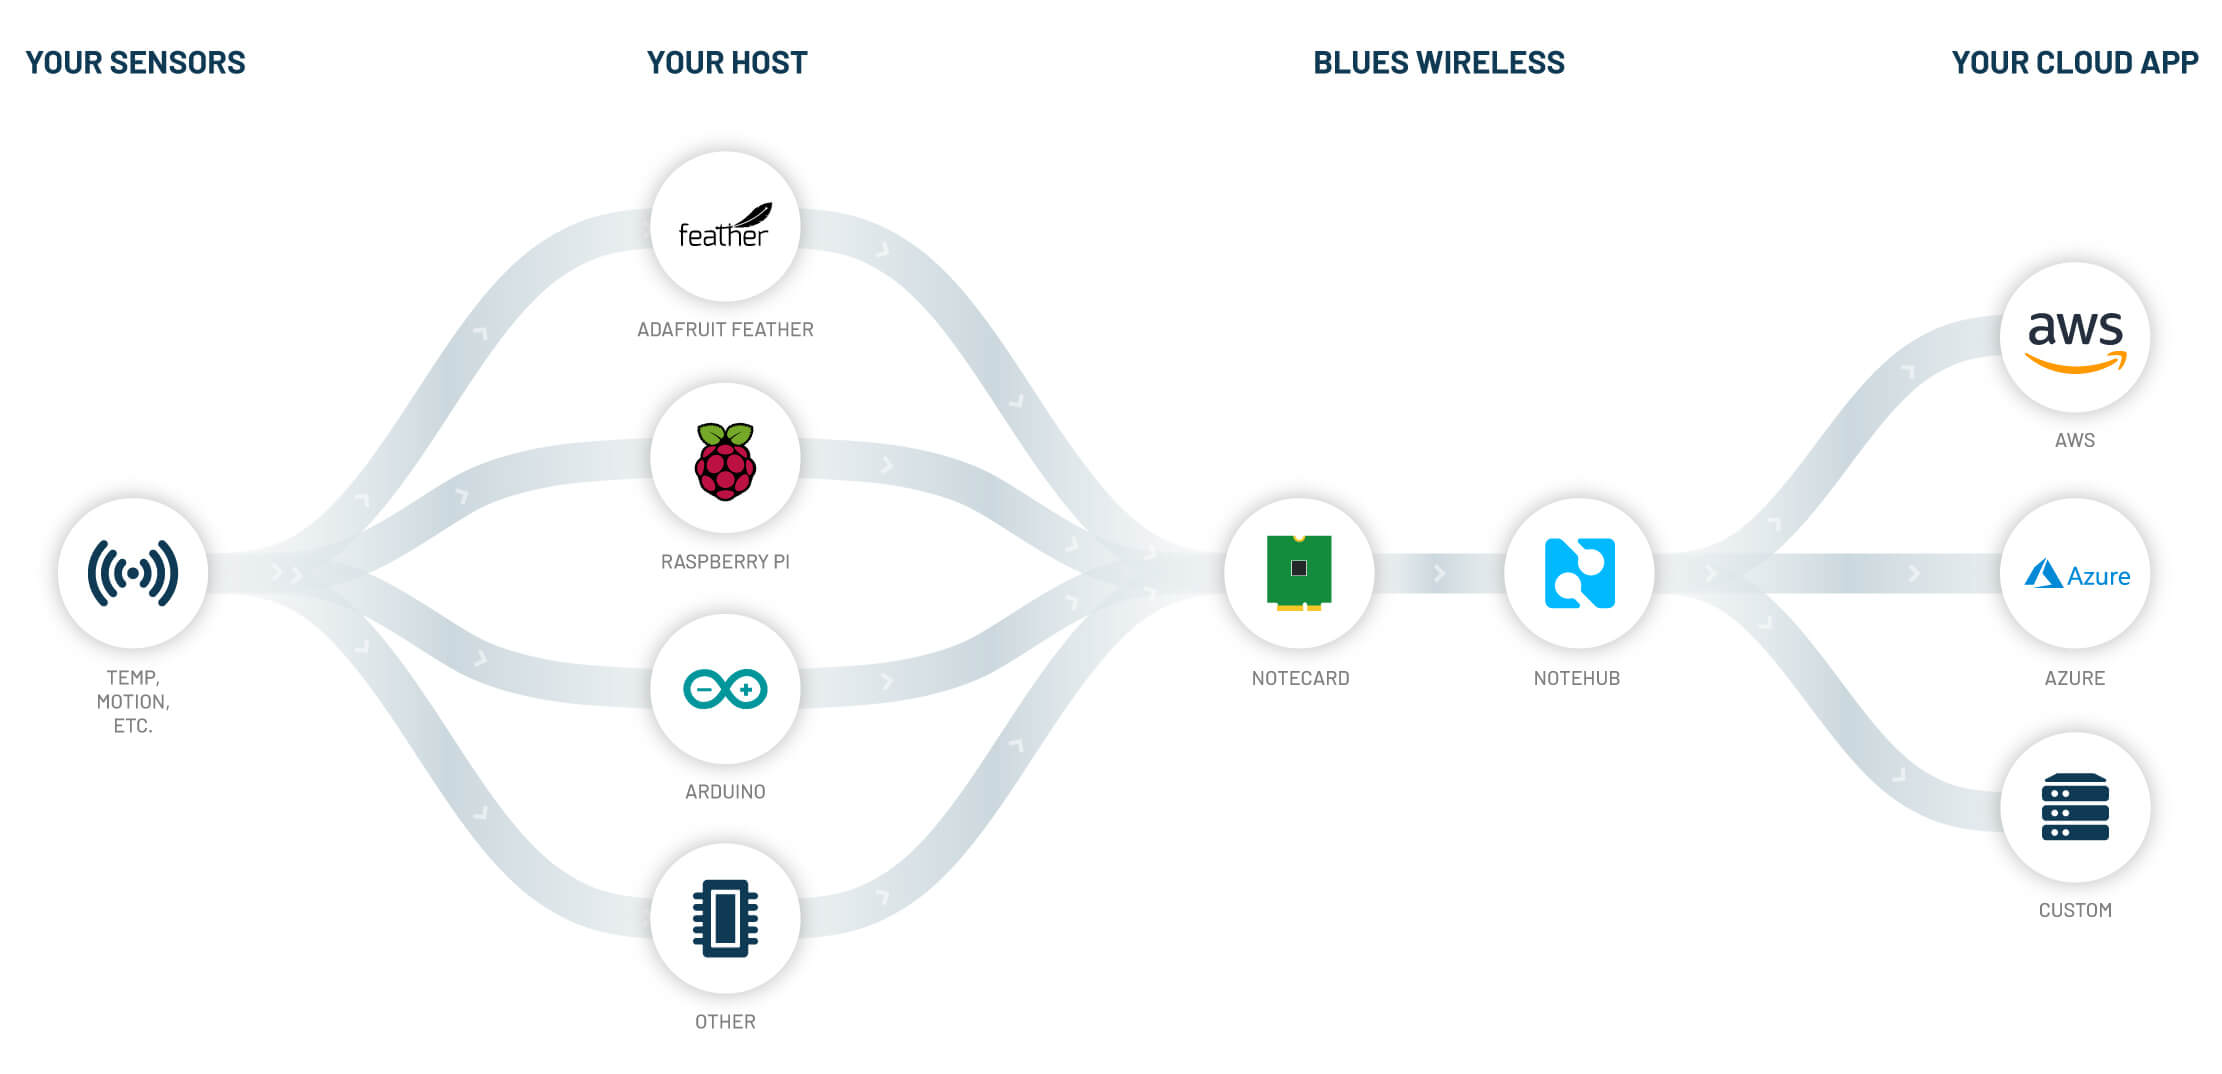 blues wireless notecard data flow